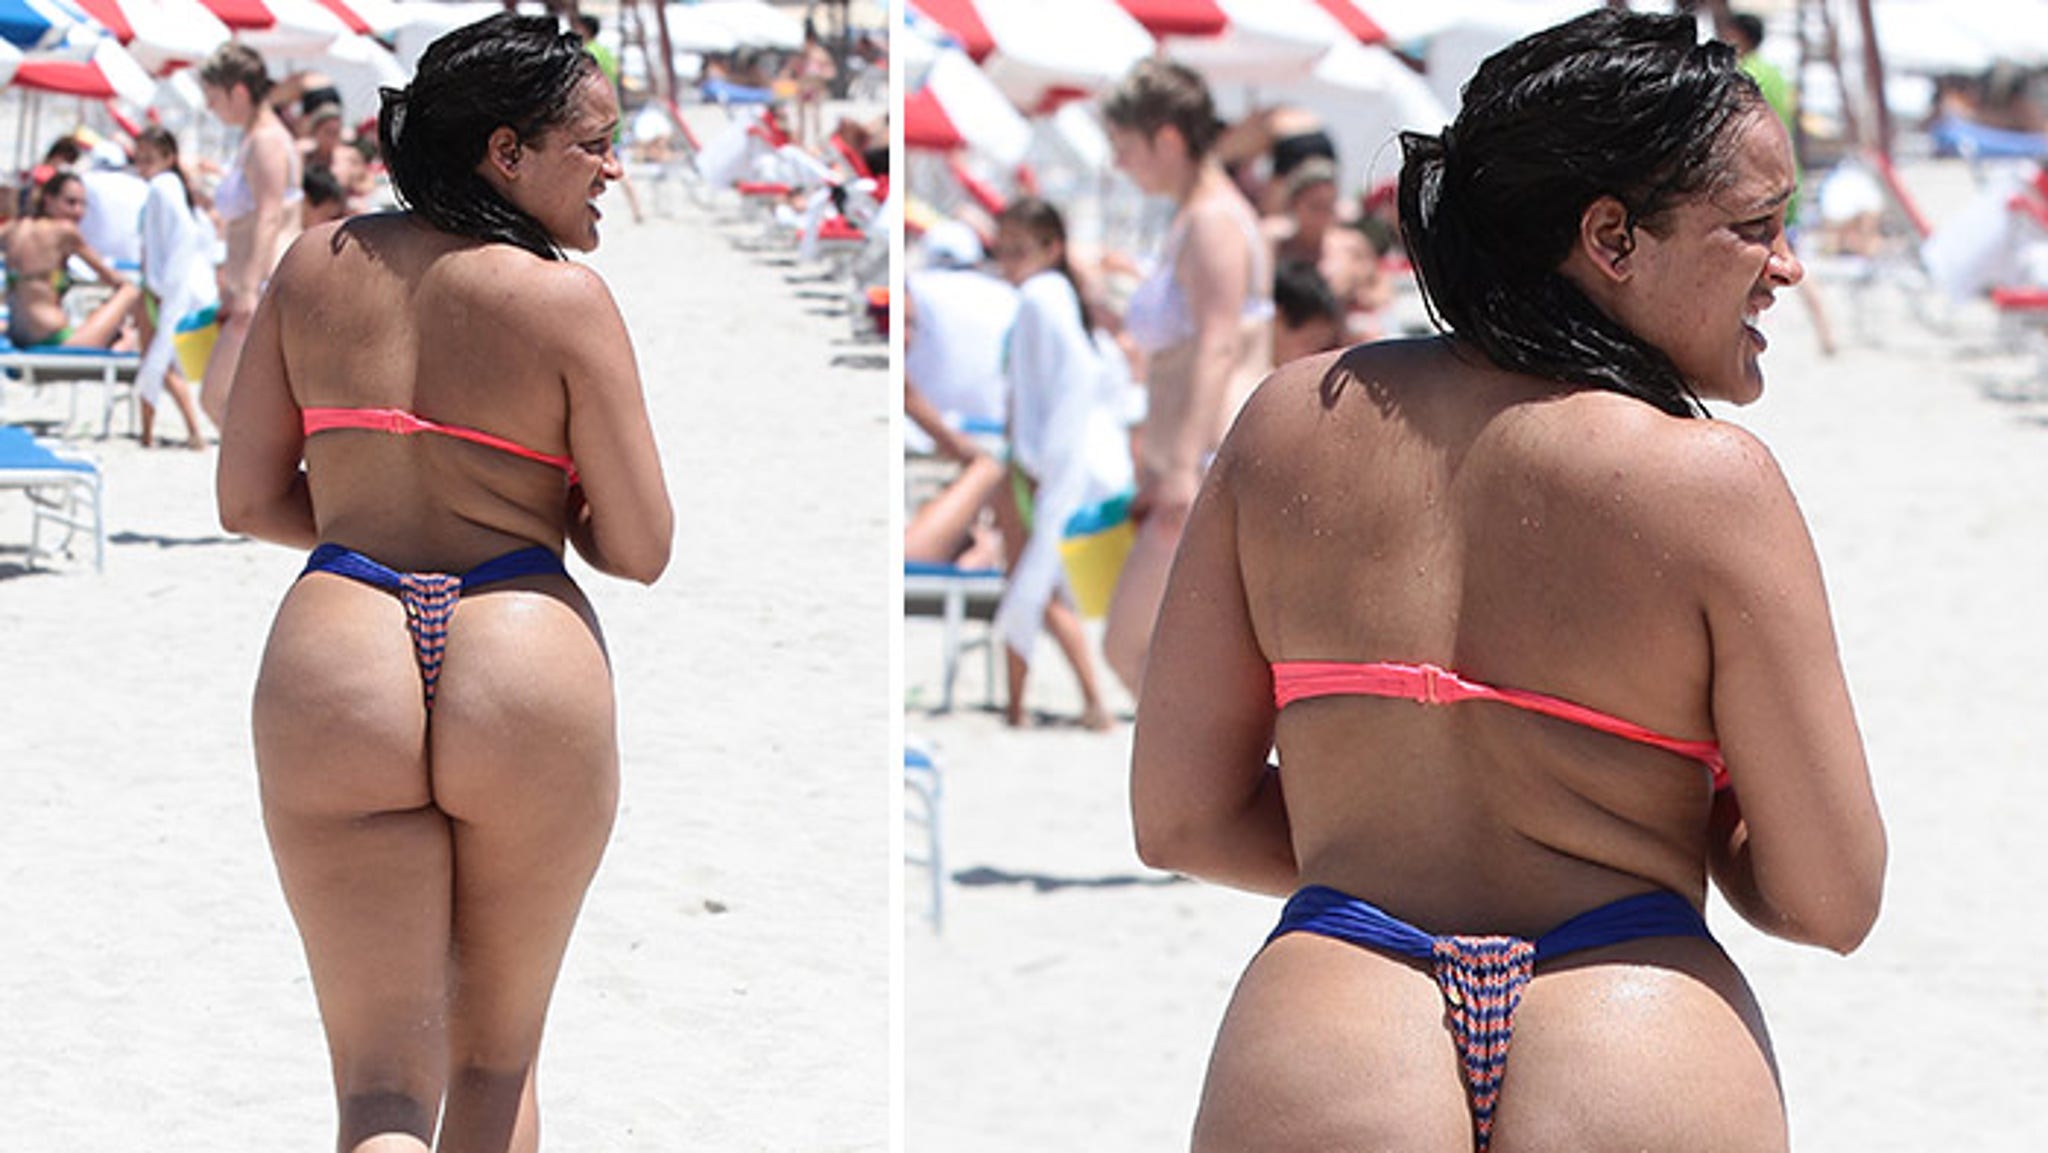 "Bad Girl Club" star Natalie Nunn saw the butt photos of ...